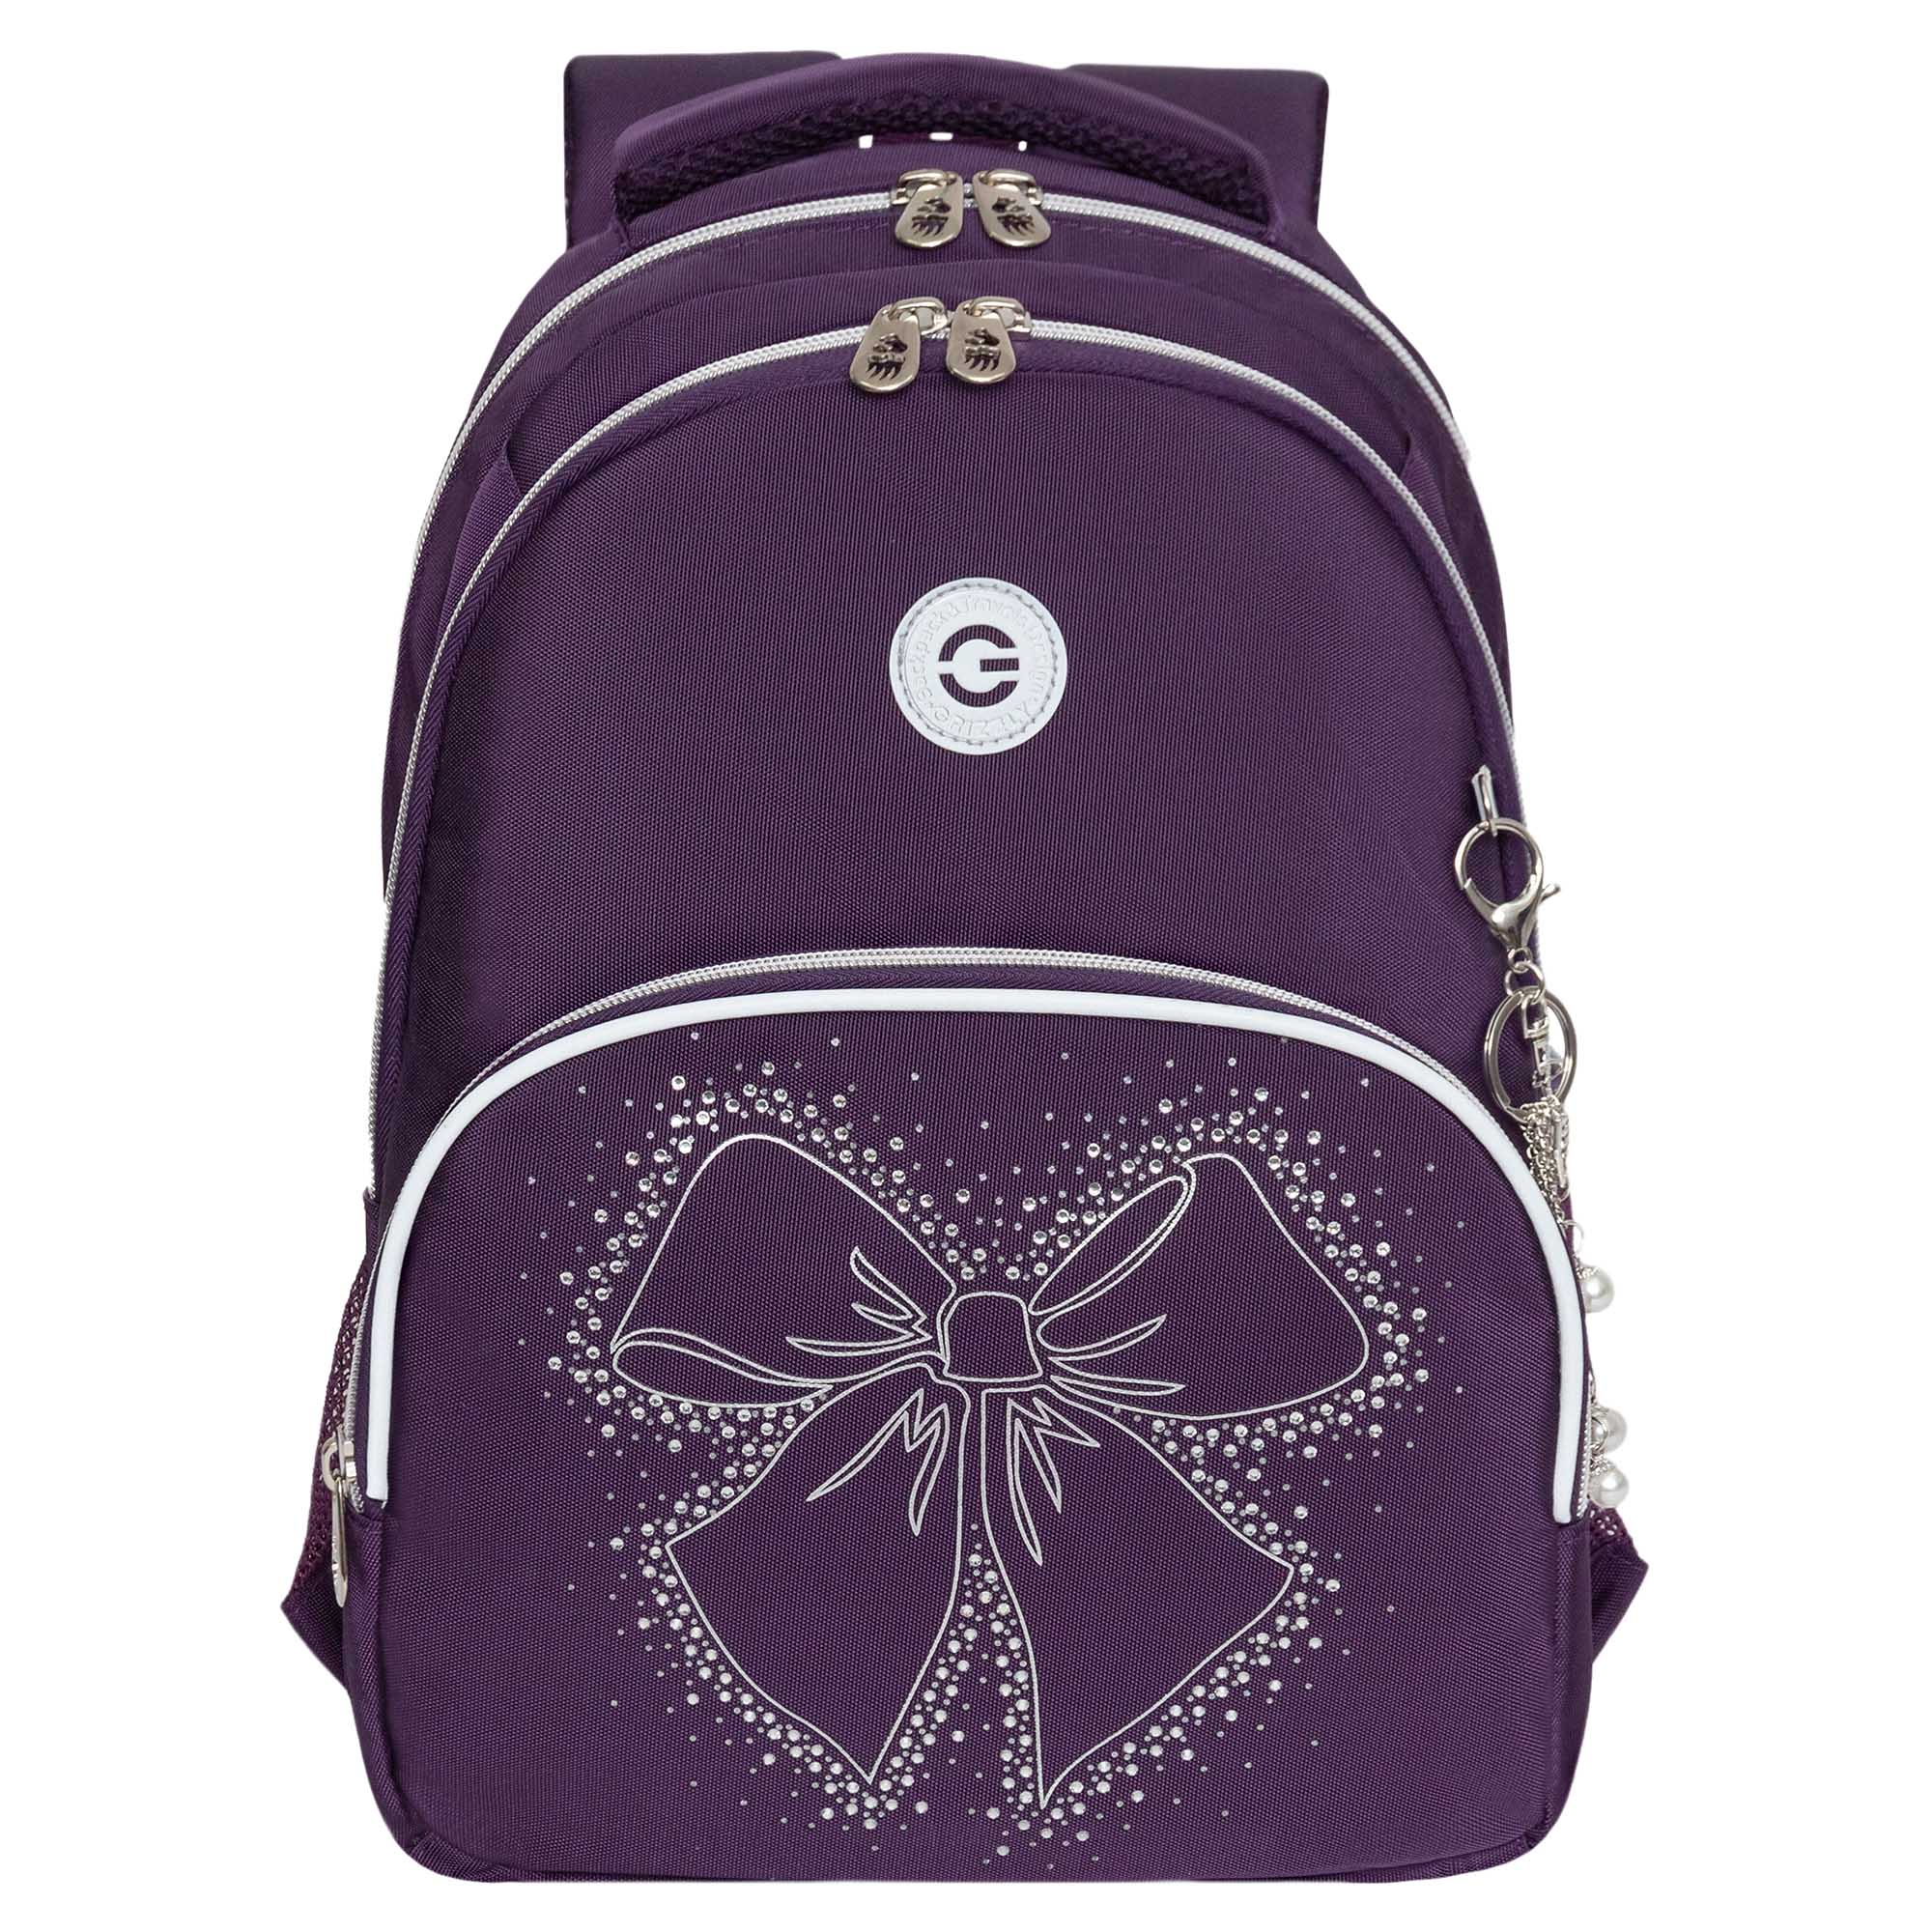 Рюкзак школьный GRIZZLY с карманом для ноутбука 13 анатомический фиолетовый RG-460-5, 3 мягкая игрушка orange toys ктотик в больших очках 8 фиолетовый ot40 50 8ф